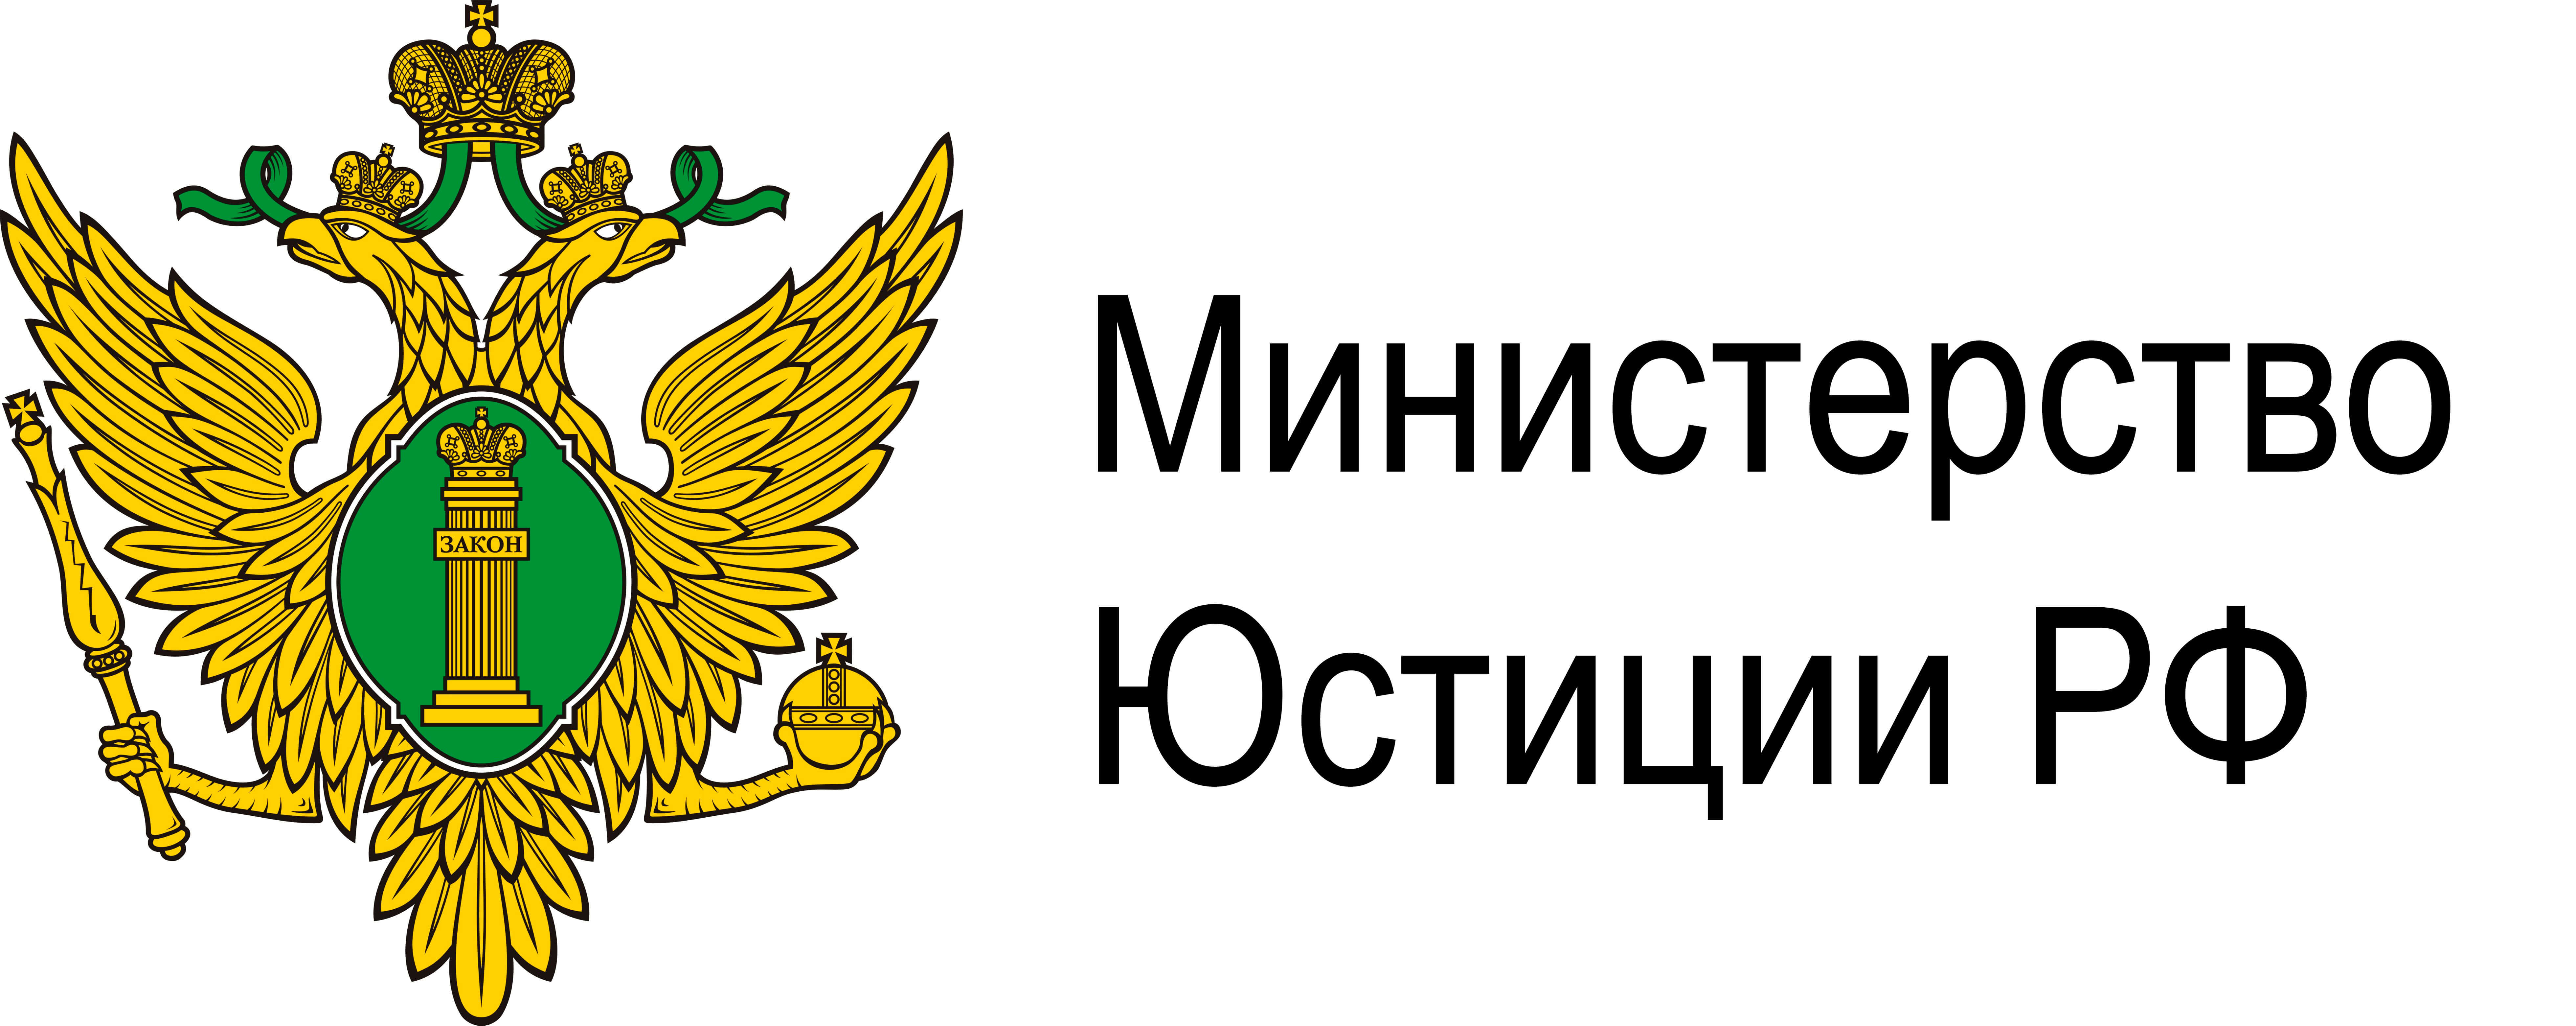 Министерство Юстиции РФ